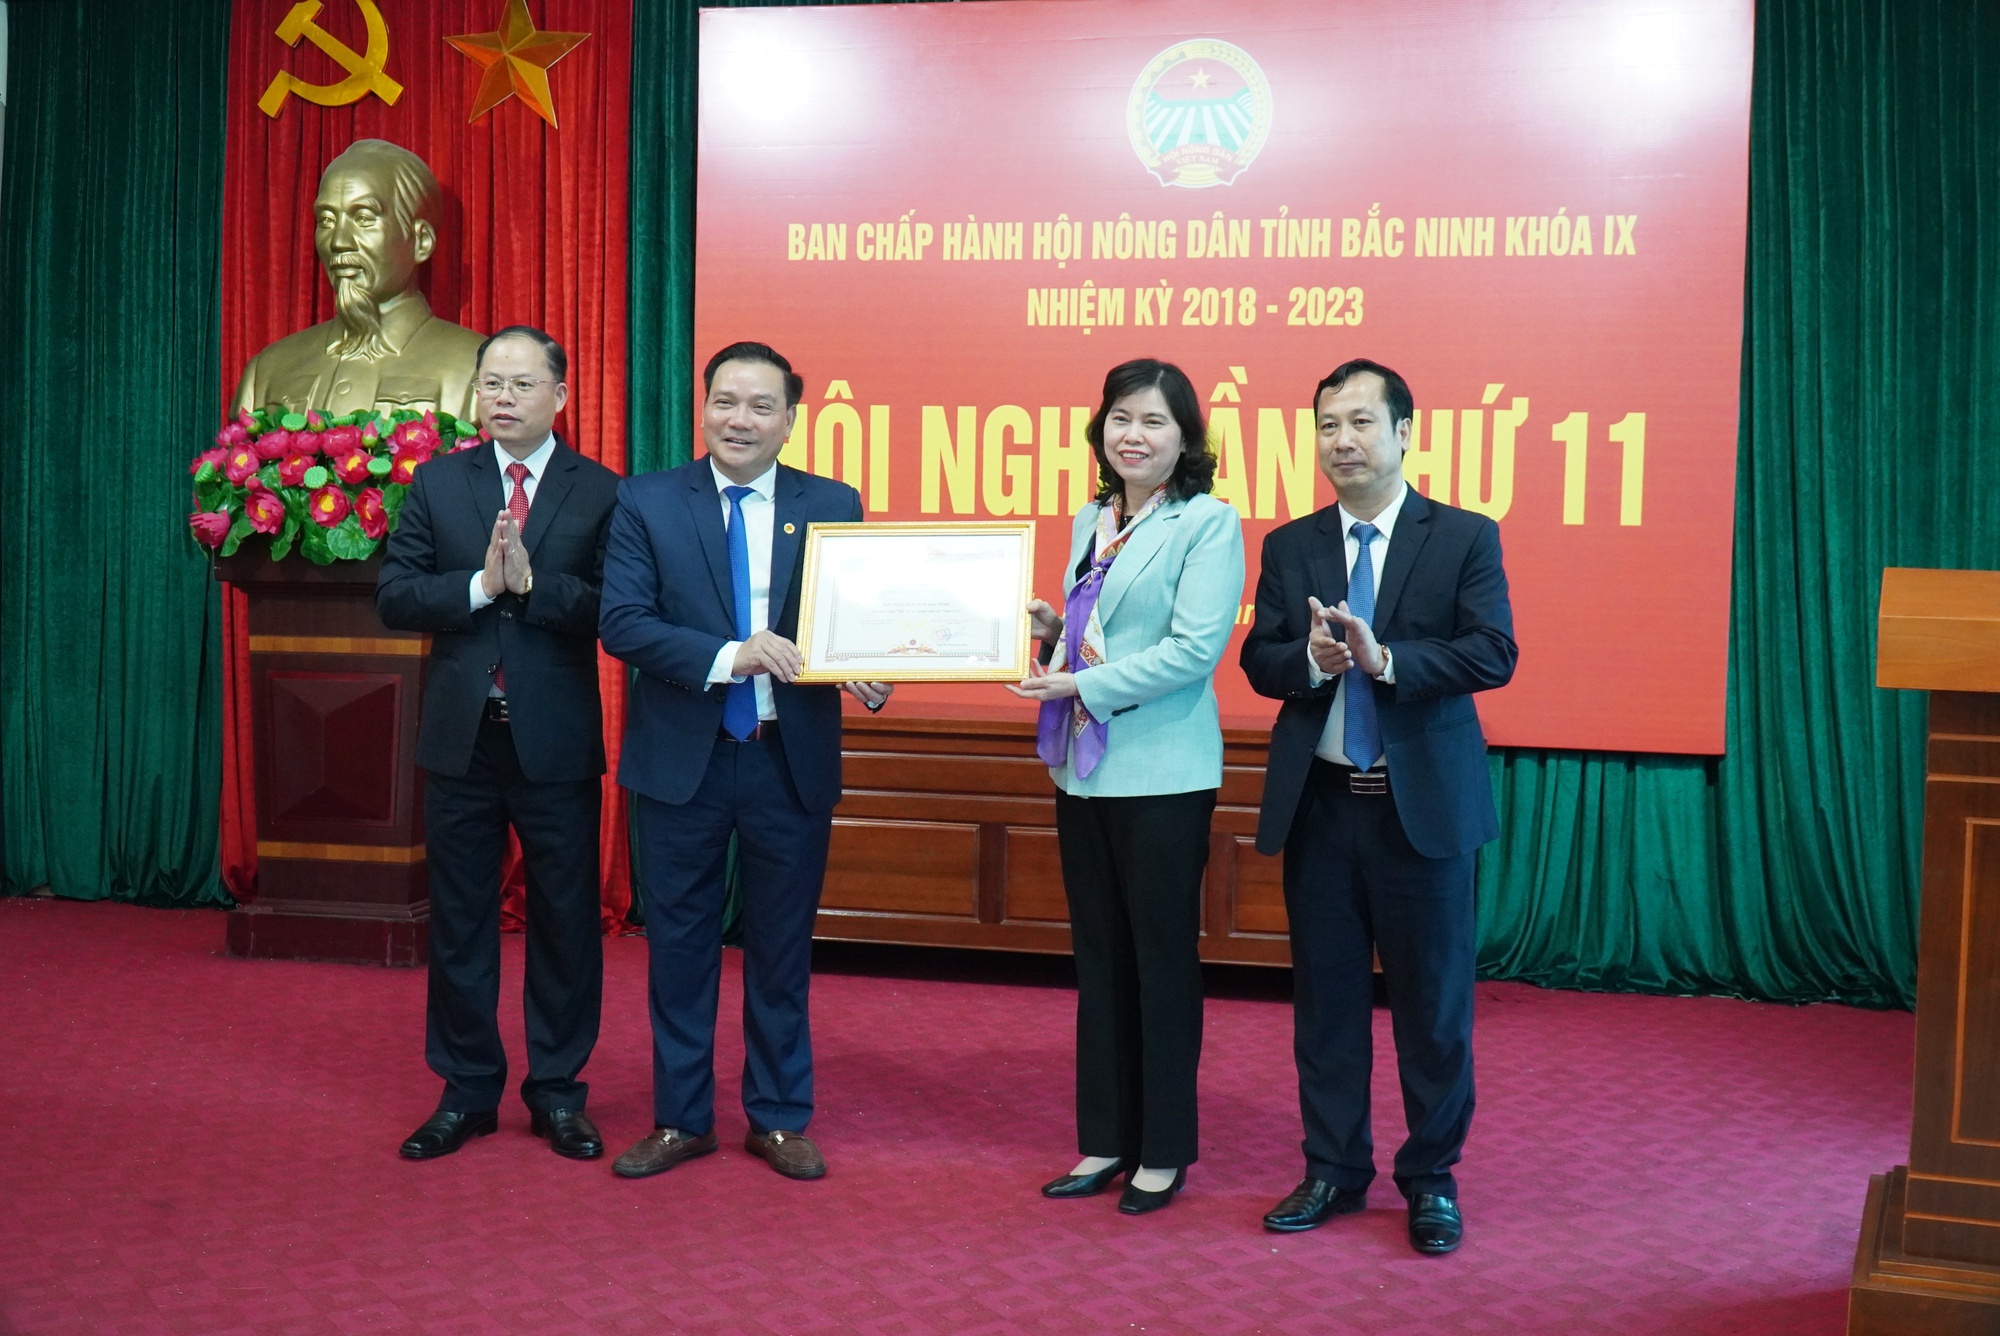 Bắc Ninh có 83.155 hộ nông dân đạt danh hiệu sản xuất kinh doanh giỏi - Ảnh 3.